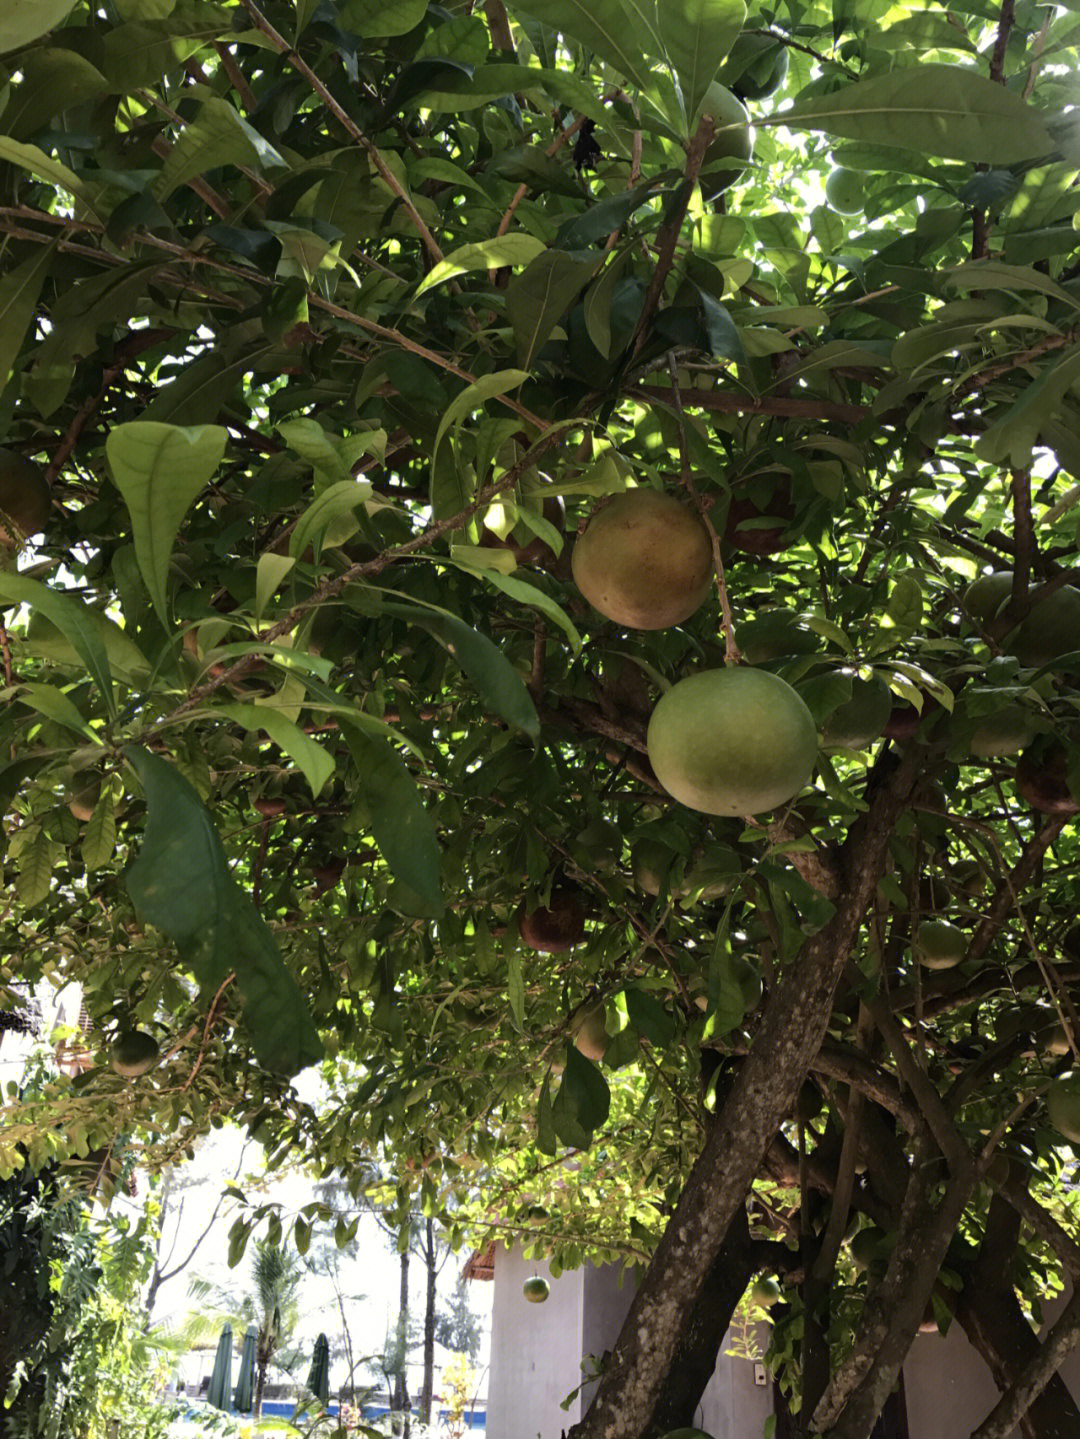 越南旅游  在路边看到一个疑似柚子的水果,刚好树下掉了一只,马上去